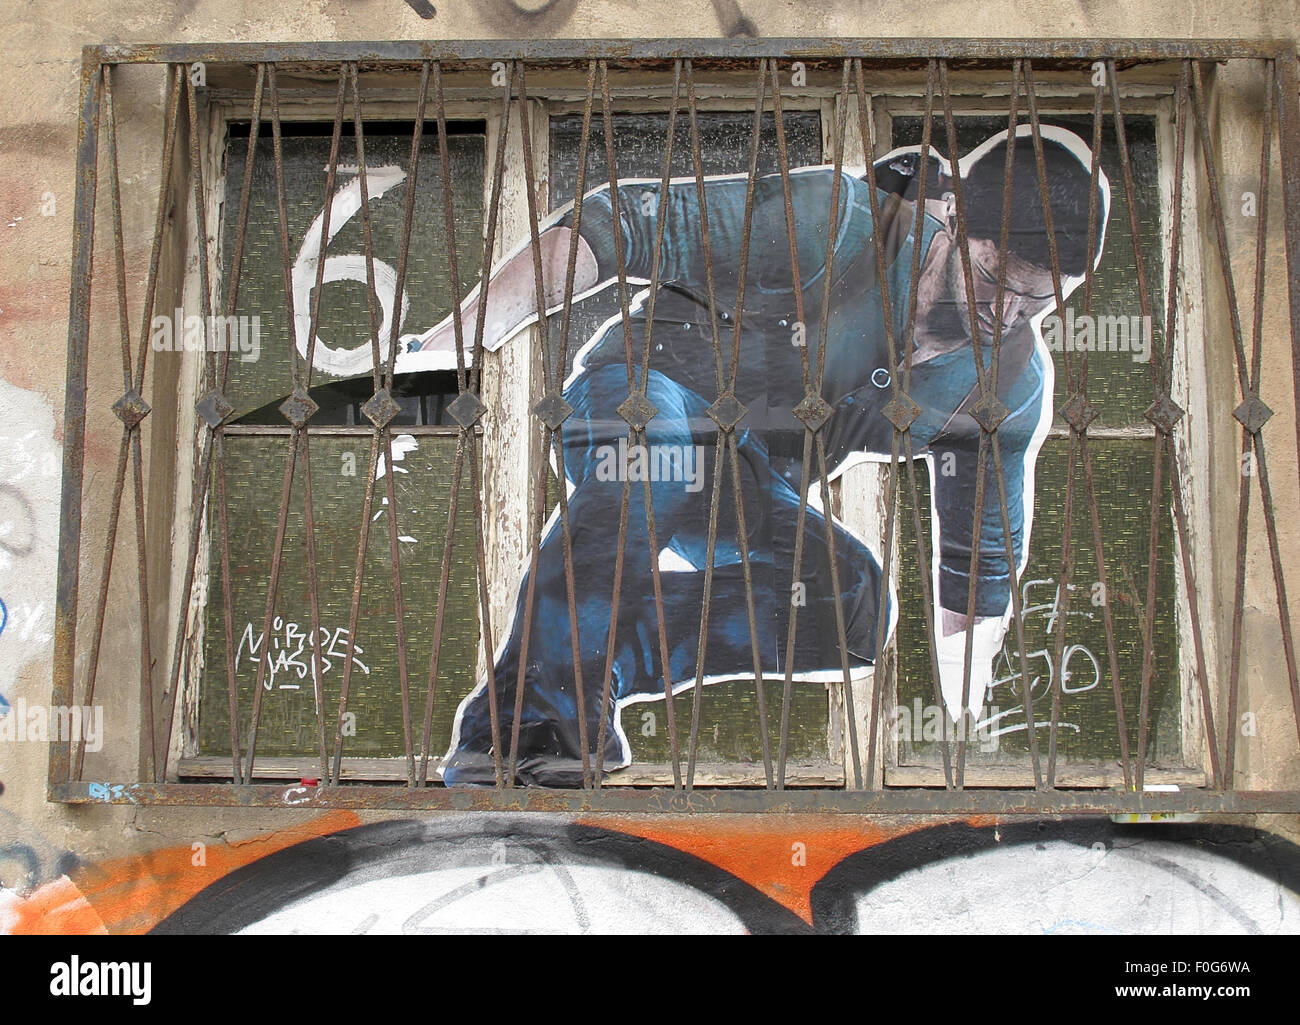 Berlin Mitte,Street art sur les murs,Allemagne - Homme escalade depuis une fenêtre,6 Banque D'Images